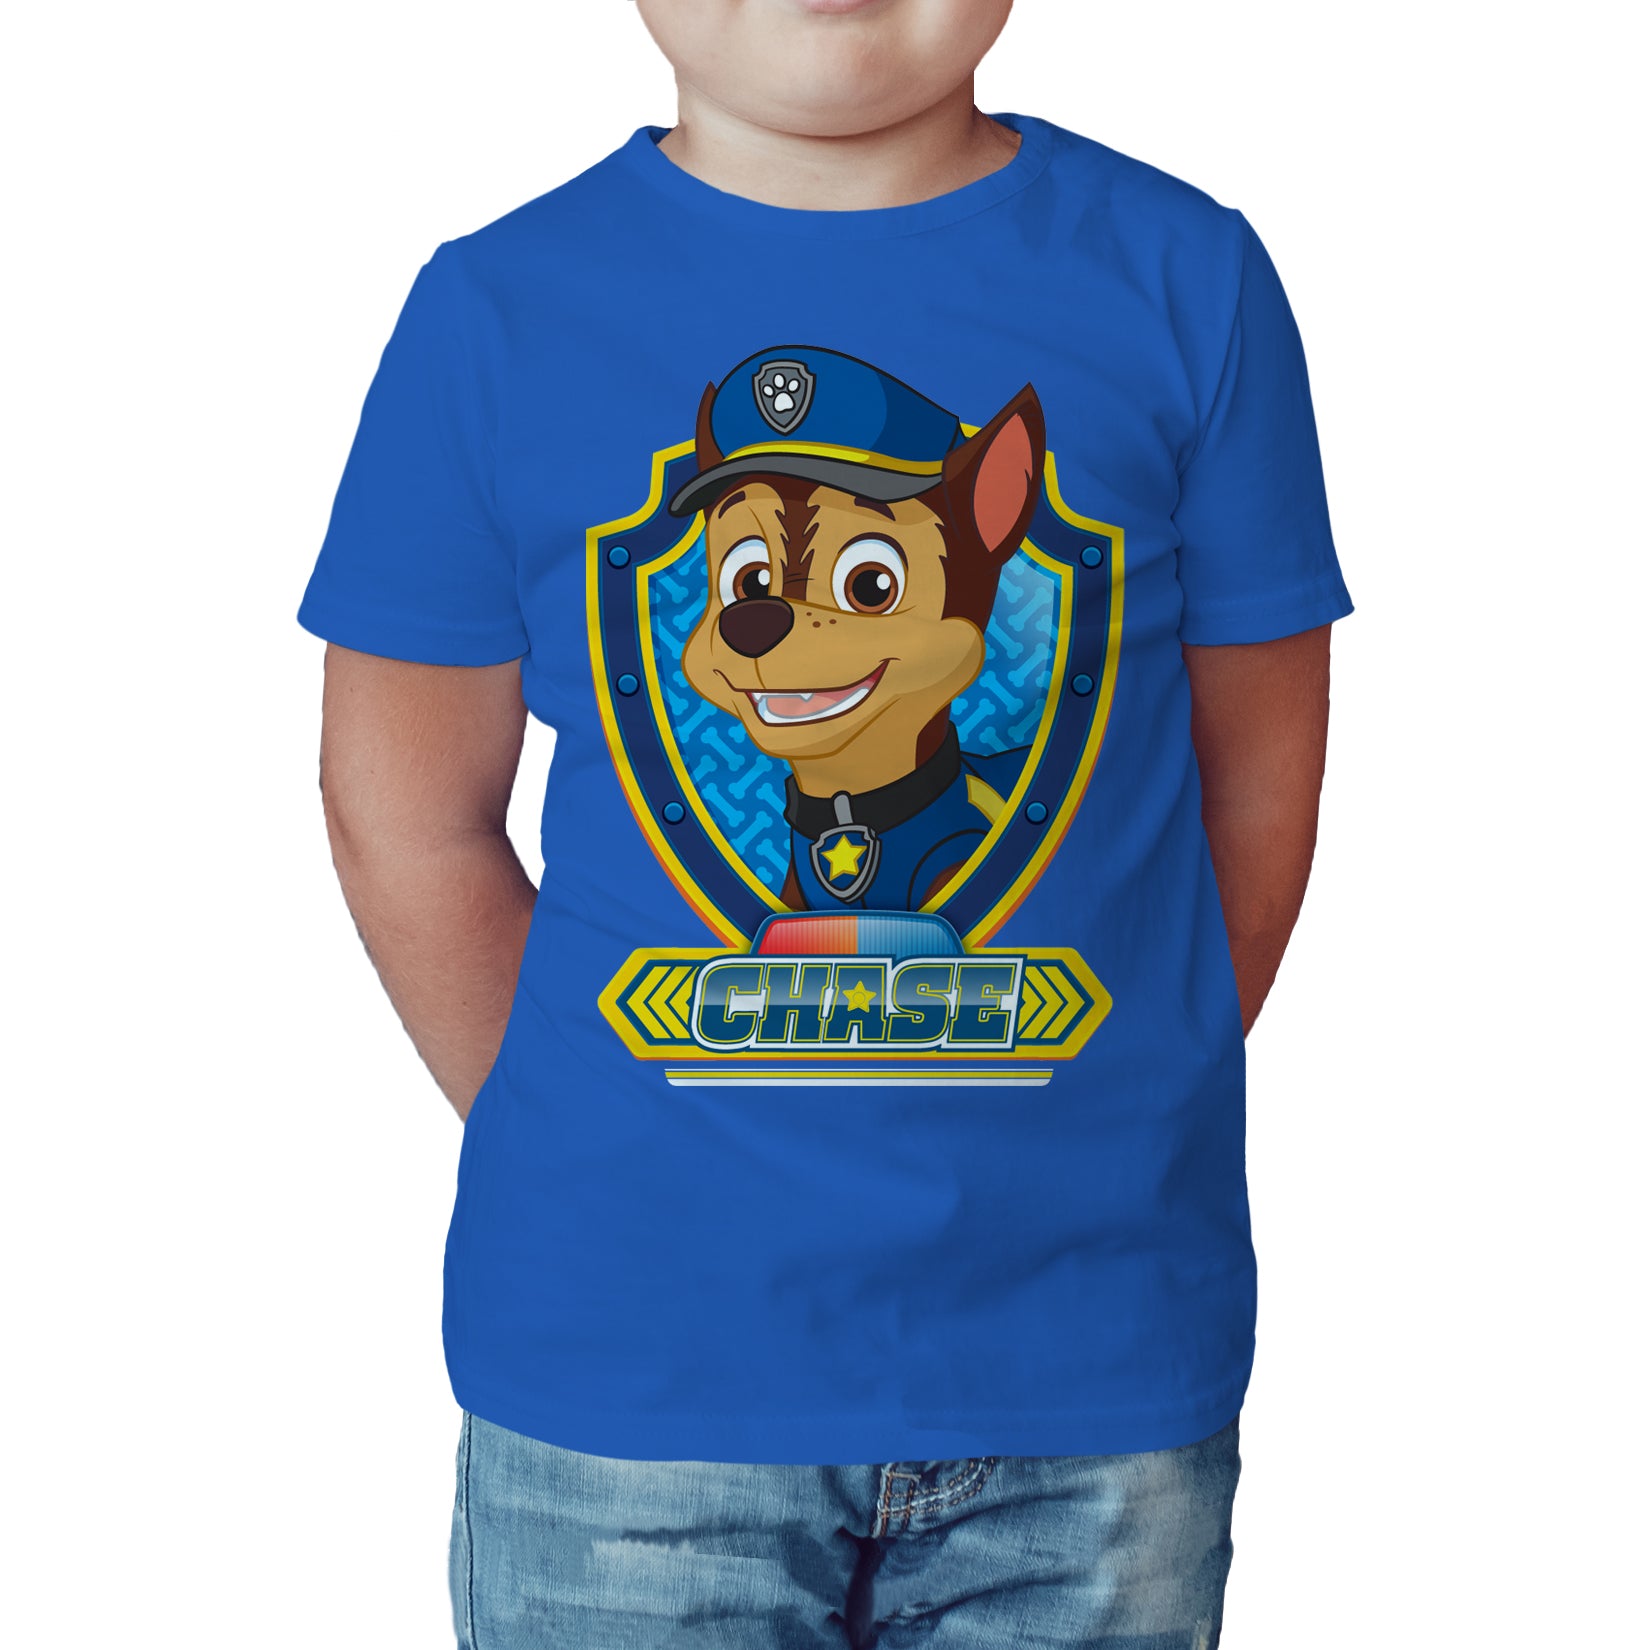 hinanden helbrede at tiltrække Paw Patrol Chase Official Kid's T-Shirt (Royal Blue) – Urban Species